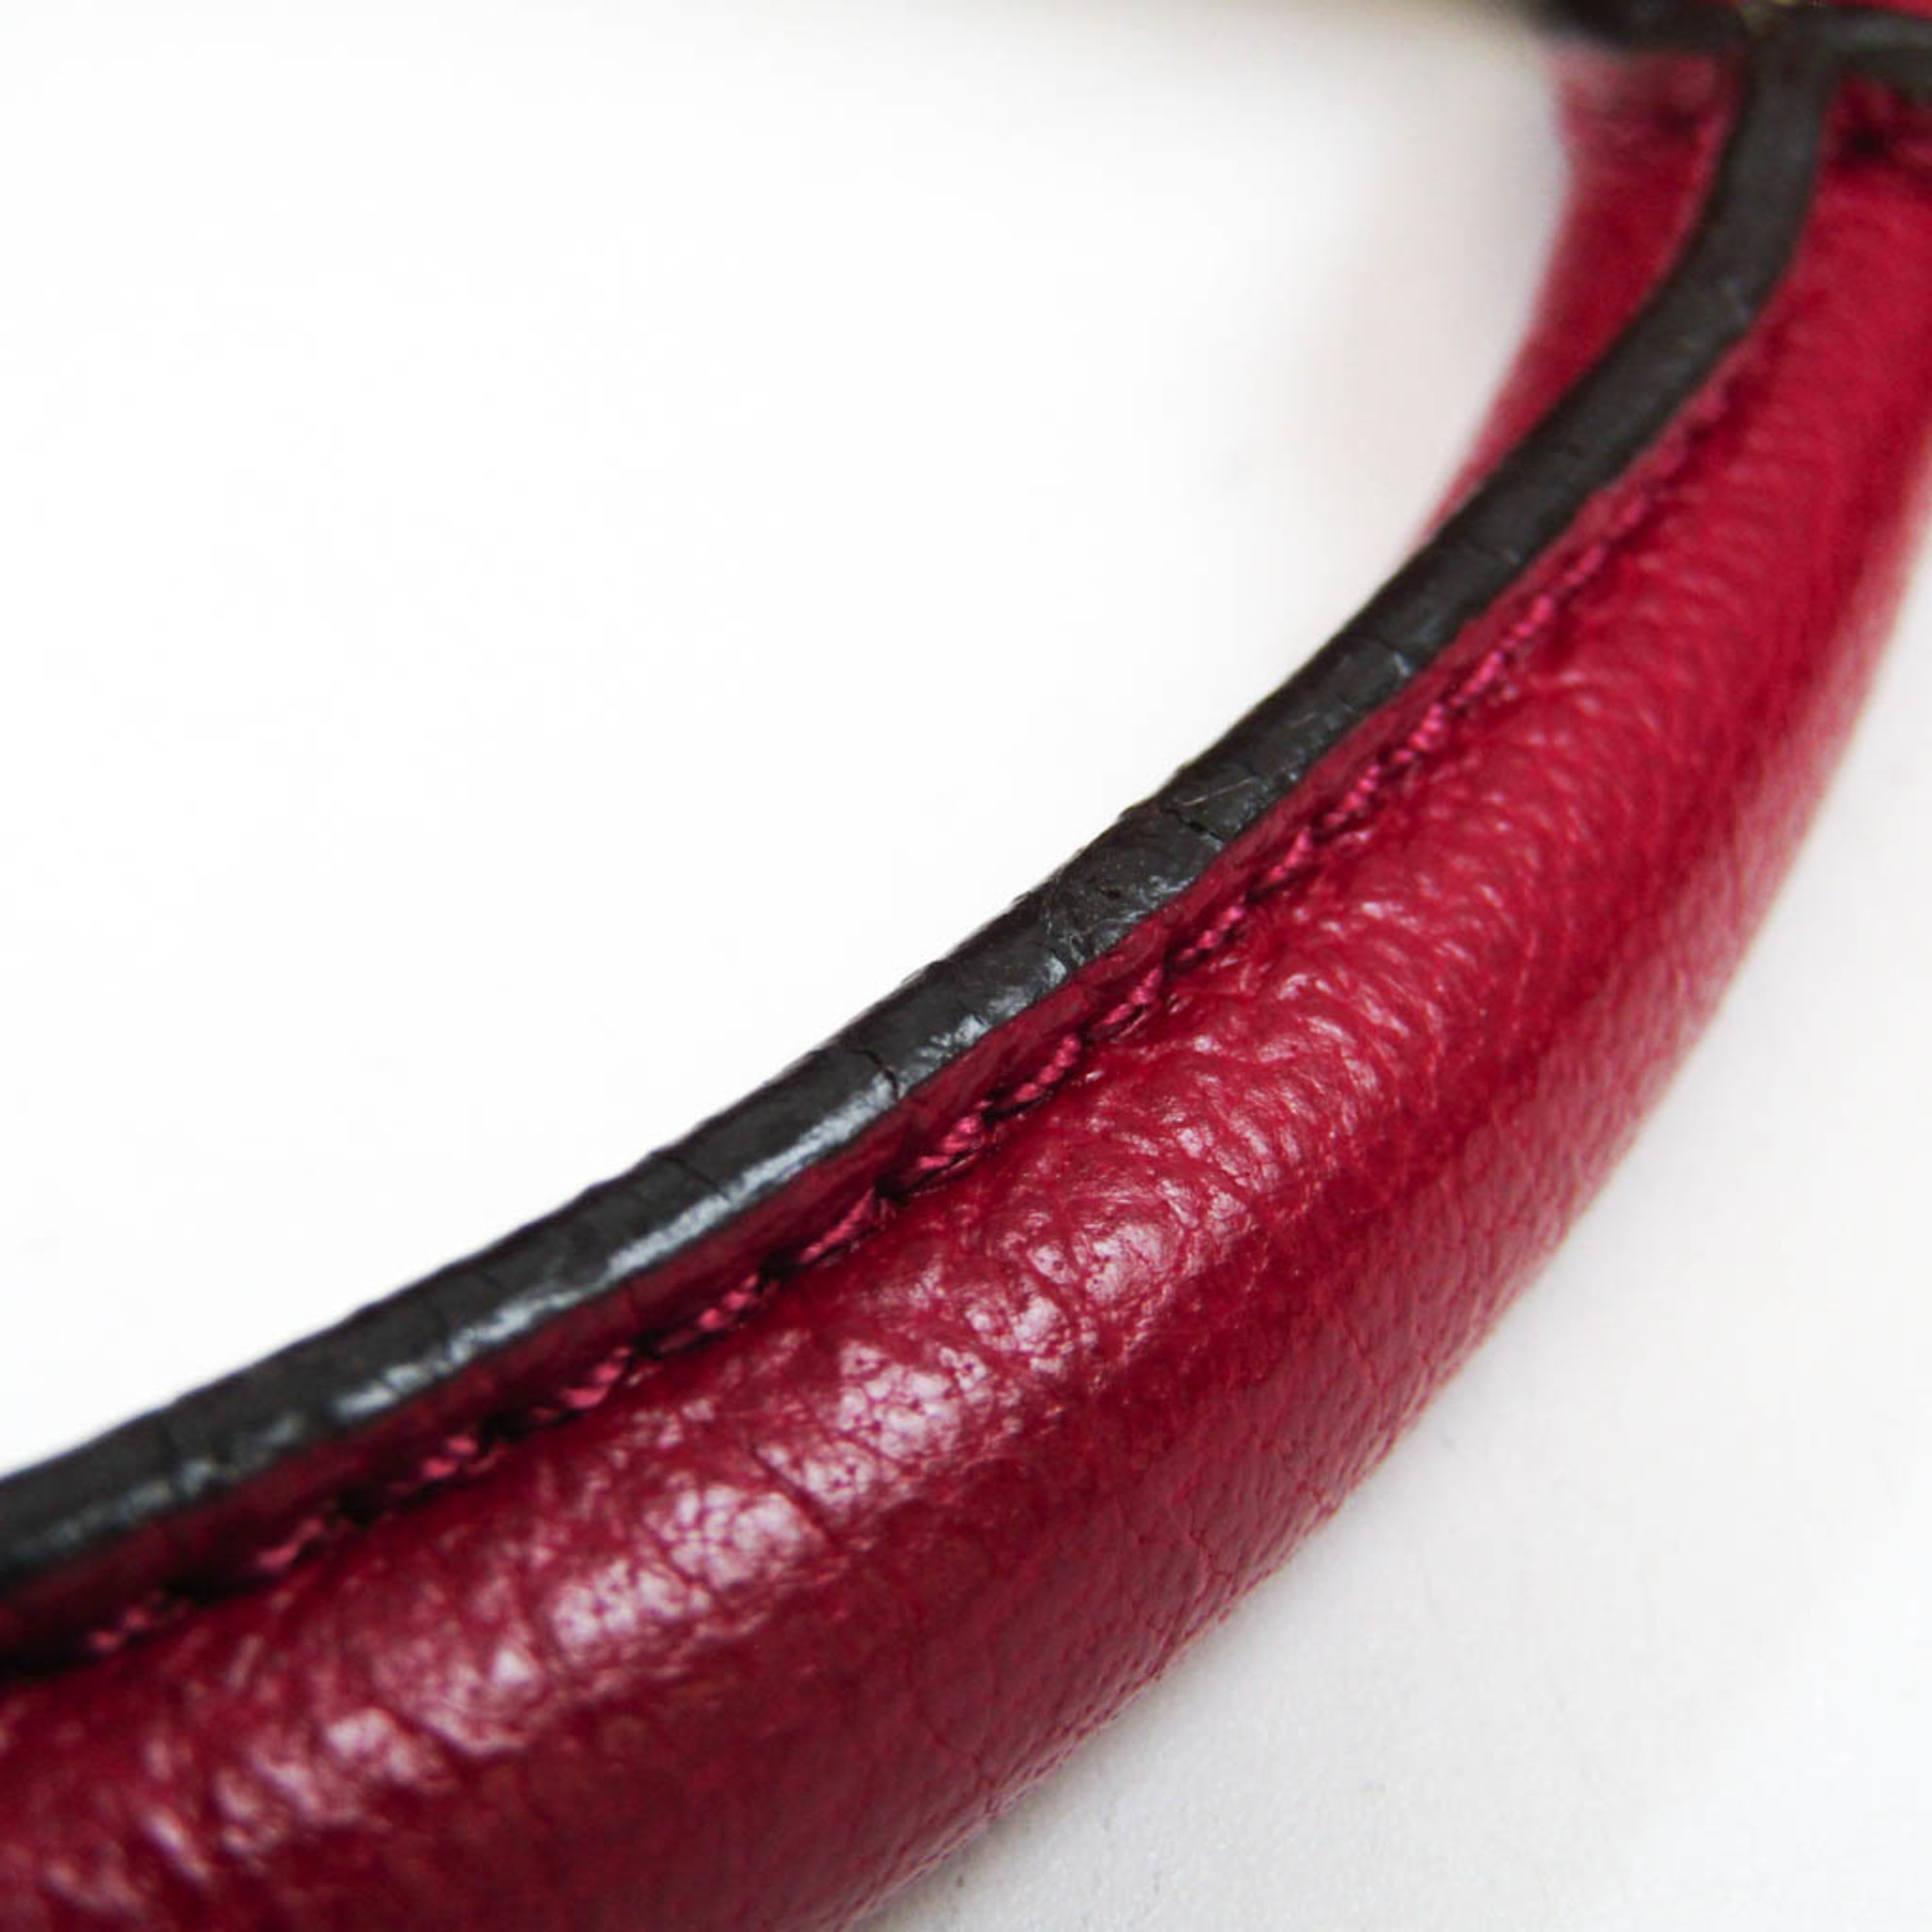 Loewe Amazona 36 Women's Leather Handbag Red Color